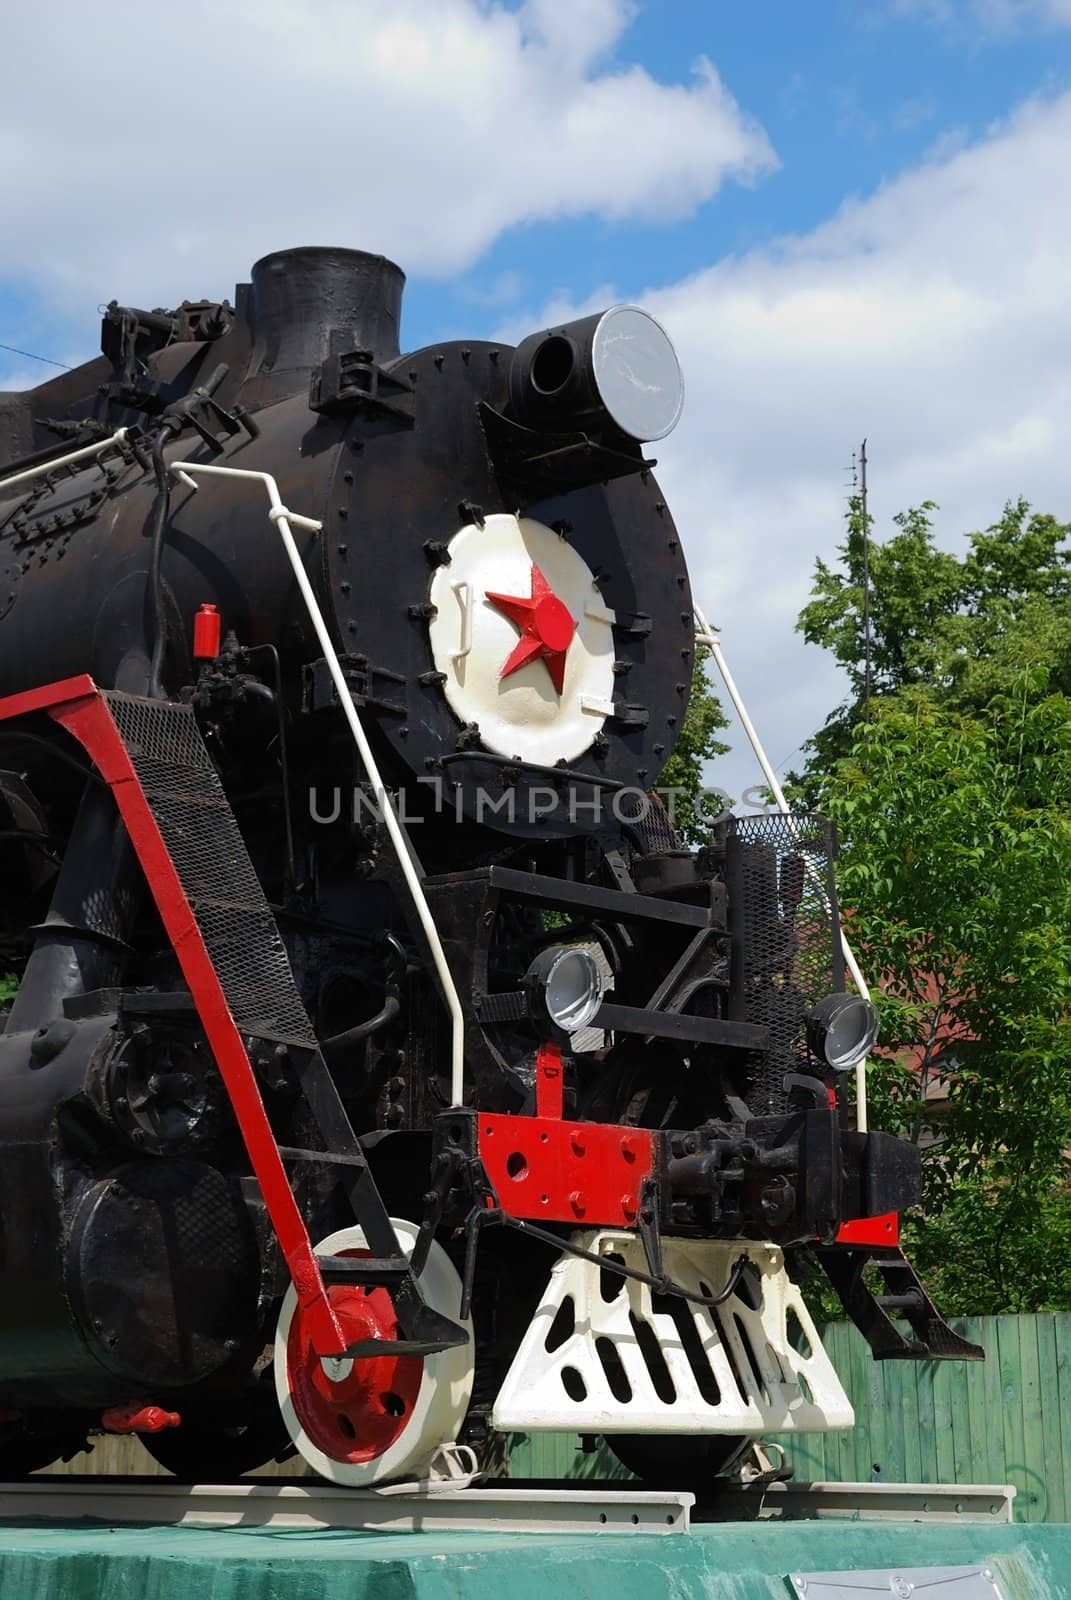 Old soviet steam locomotive